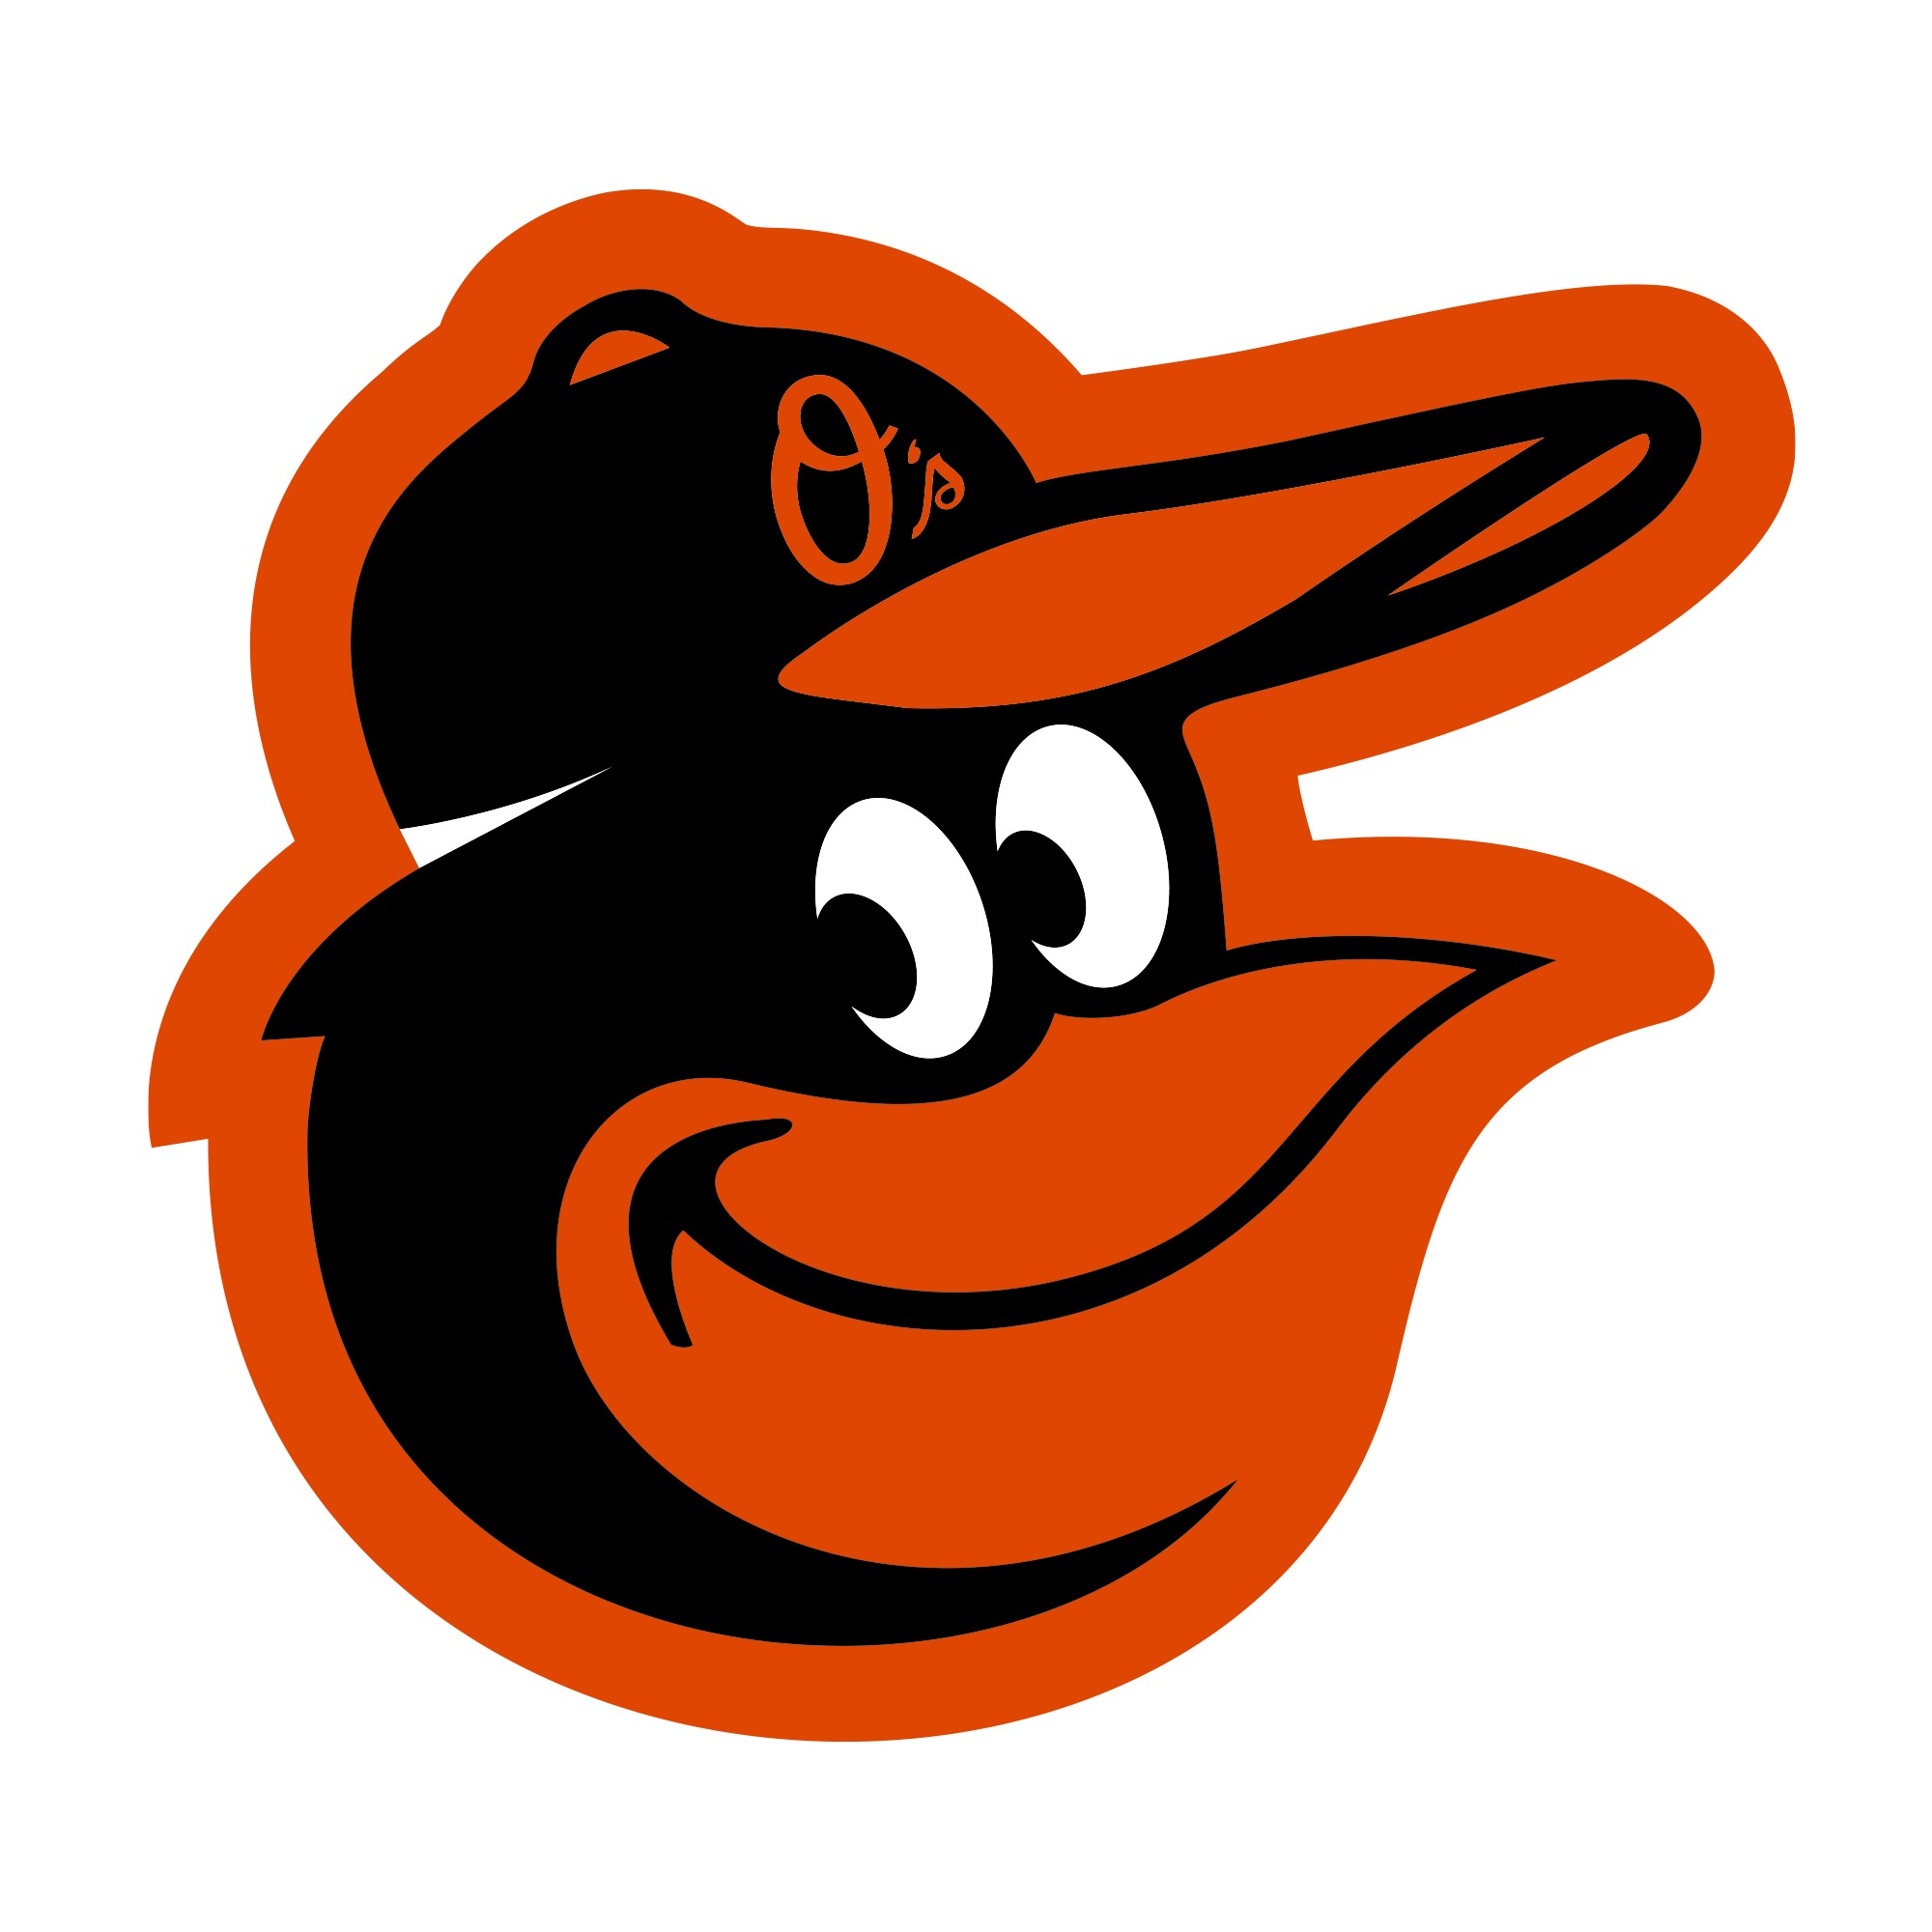 Baltimore Orioles, Logotype, Major League Baseball Wallpaper